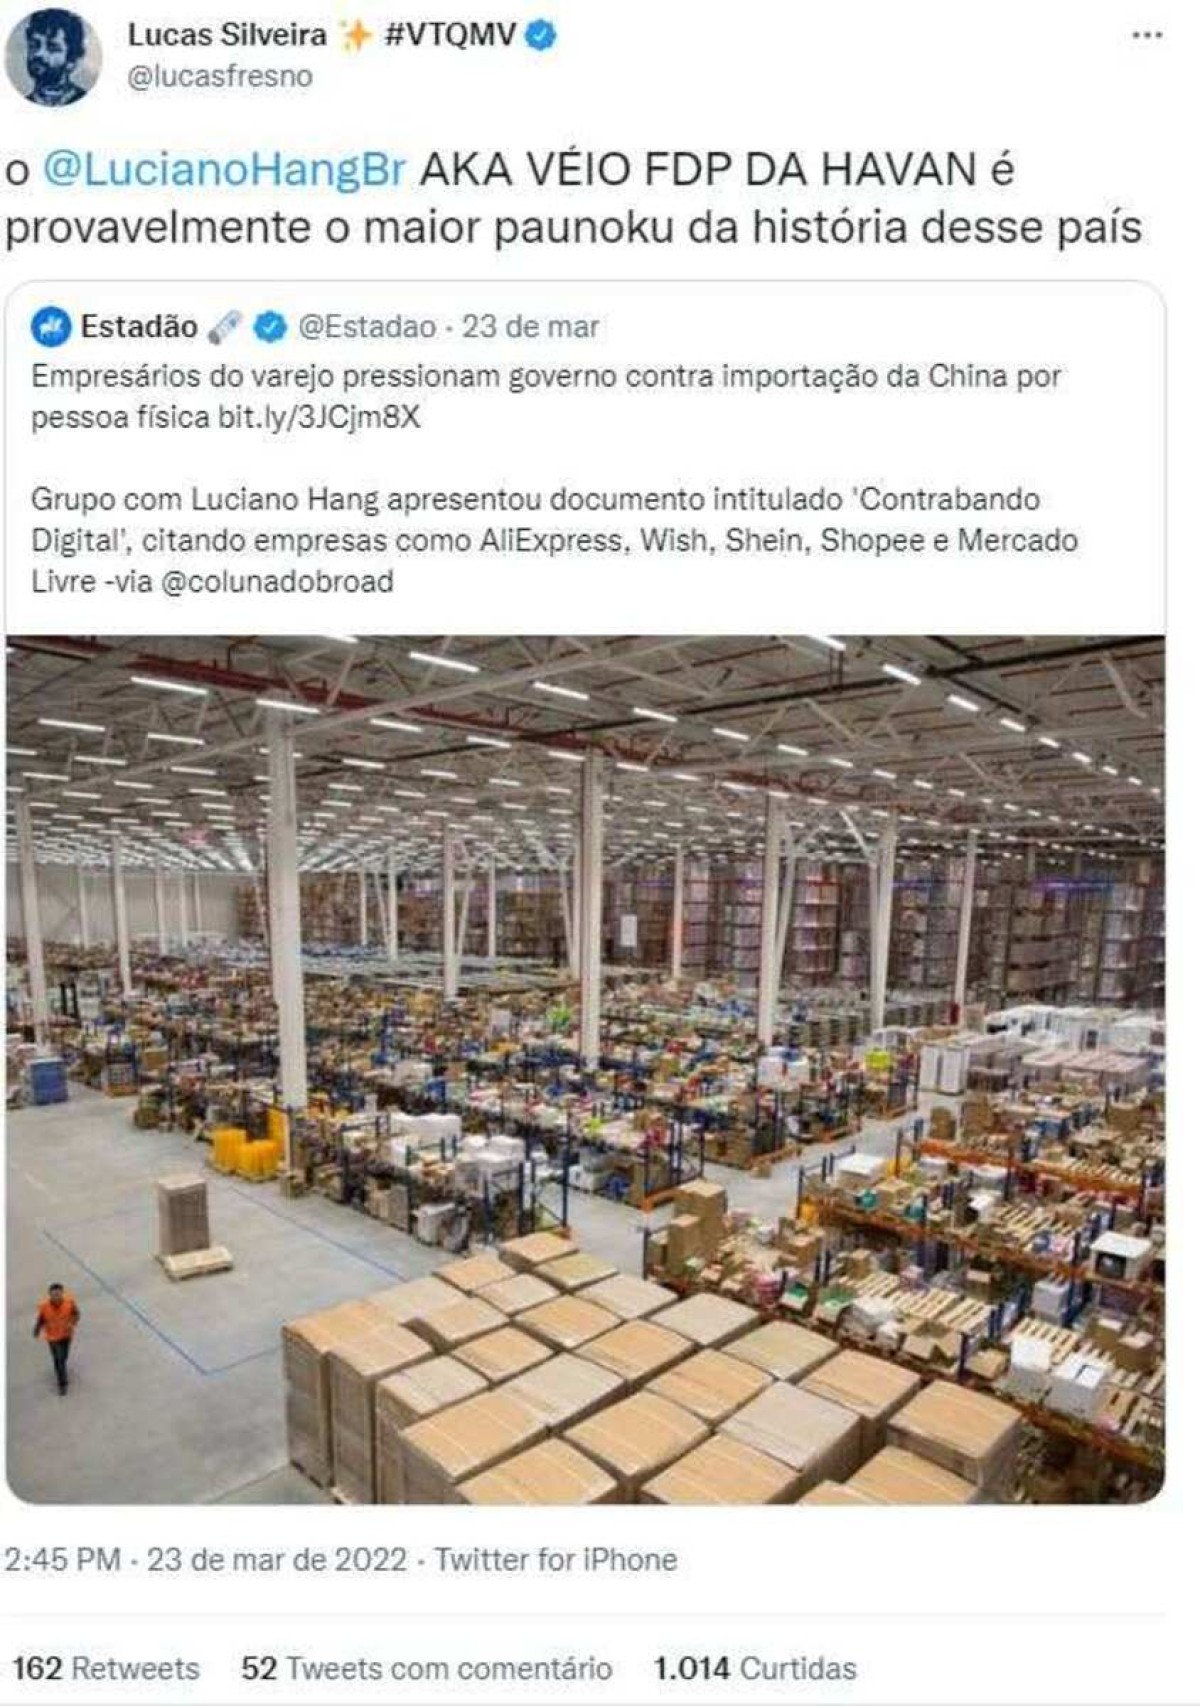 Lucas Silveira xinga Luciano Hang em publicação no Twitter. Empresário pede indenização por danos morais 